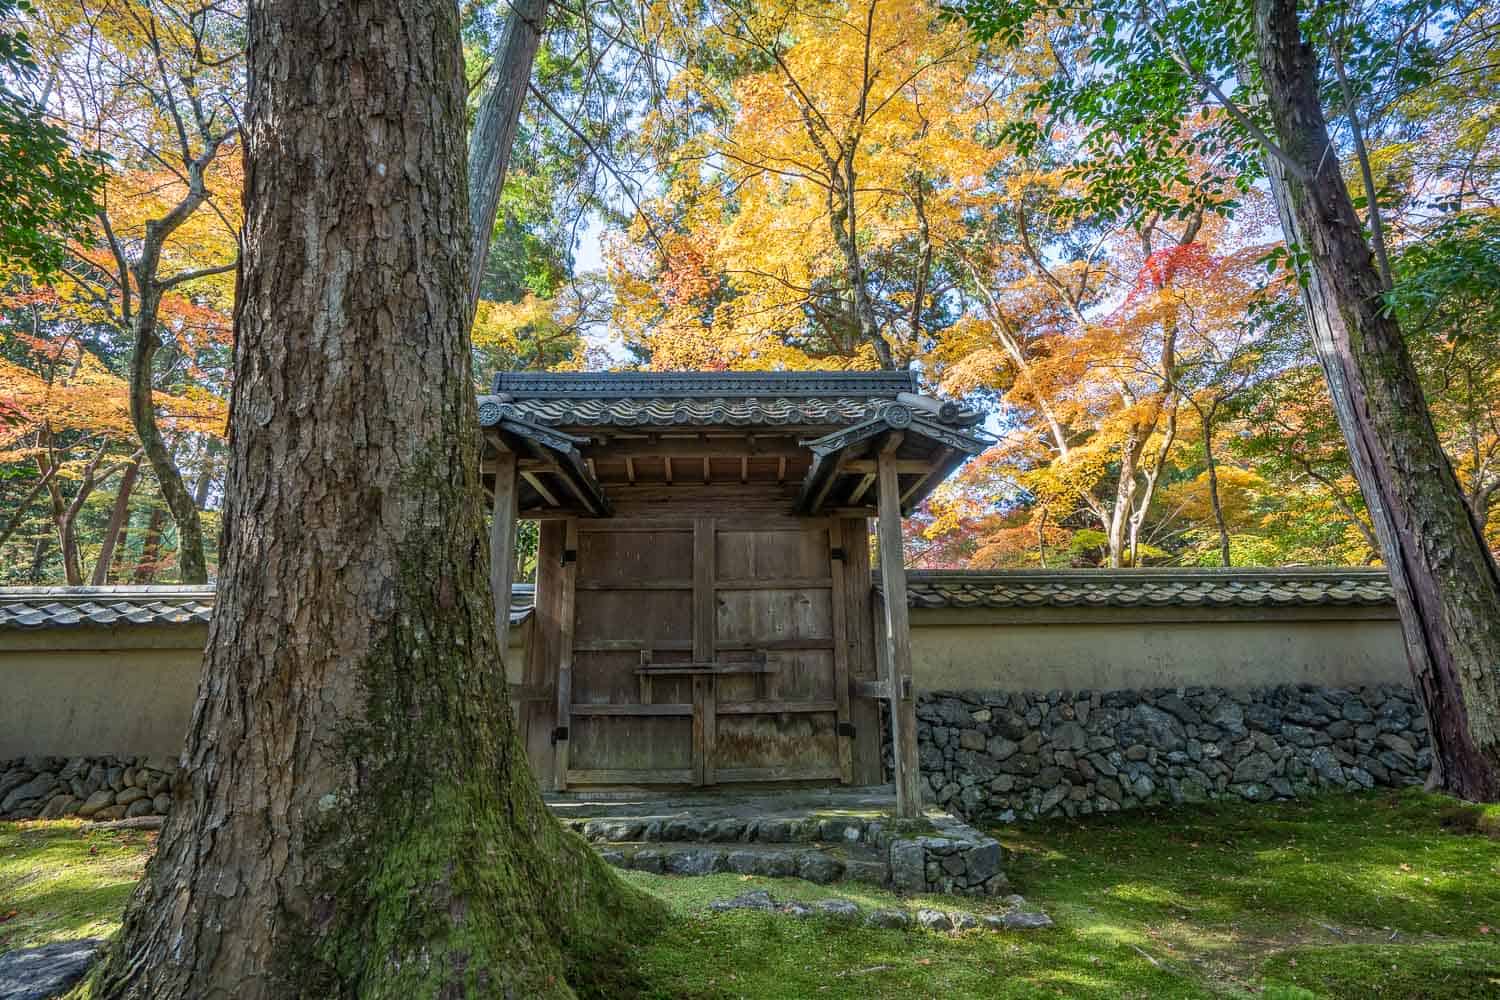 Walls and gate at Saihoji Moss Temple, Kyoto, Japan